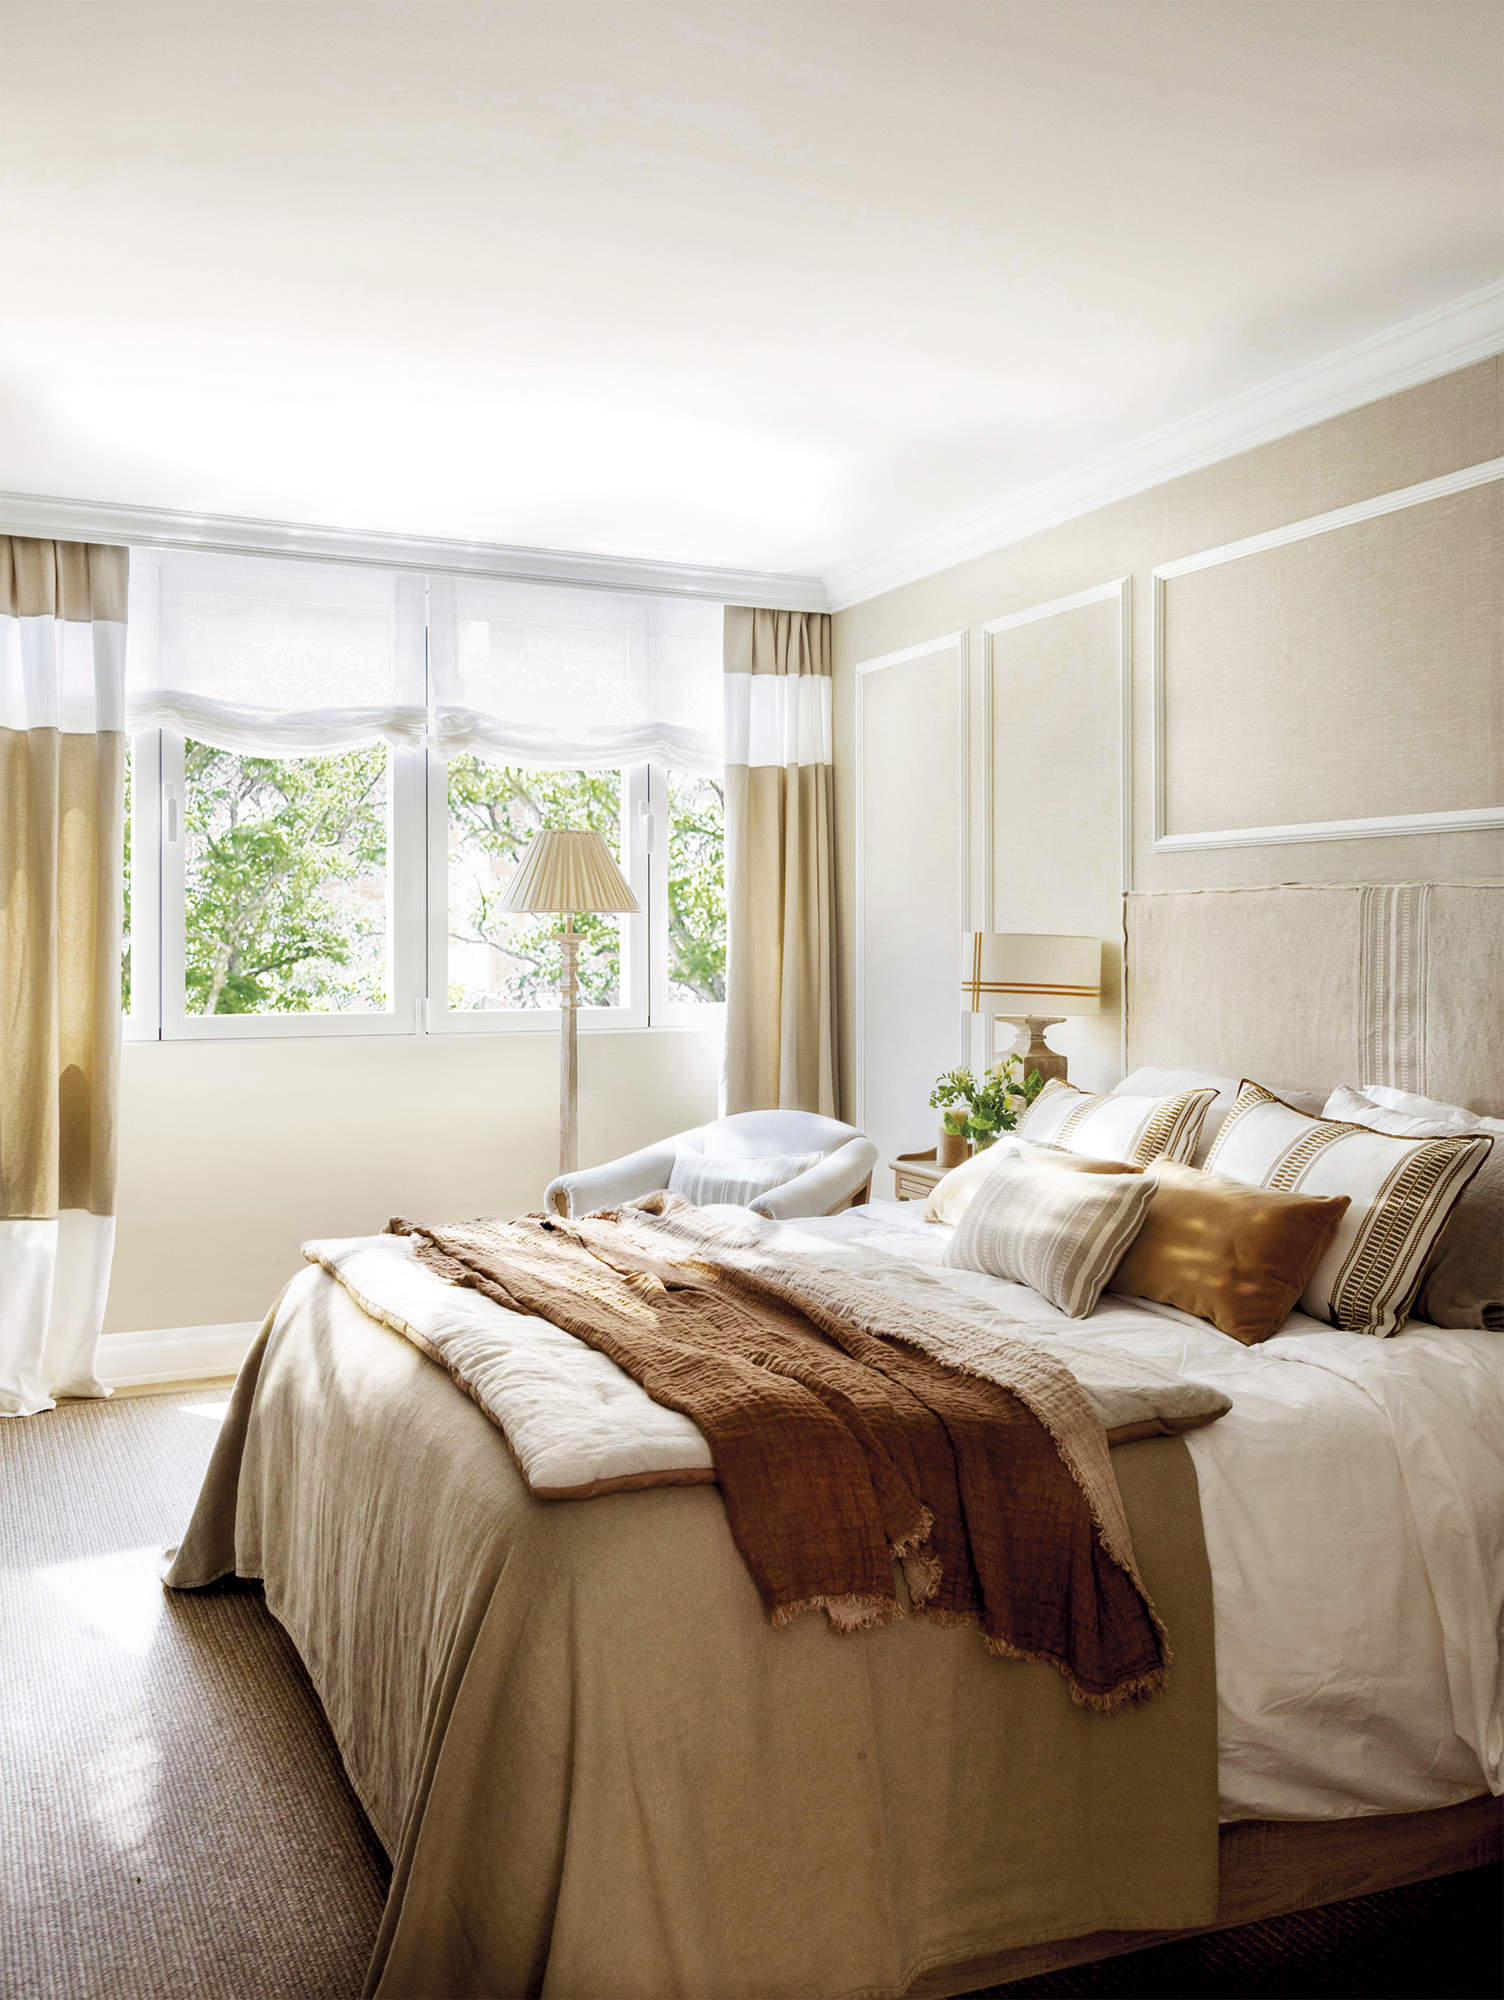 Dormitorio principal con pared con molduras, cabecero, ropa de cama de colores tierra.